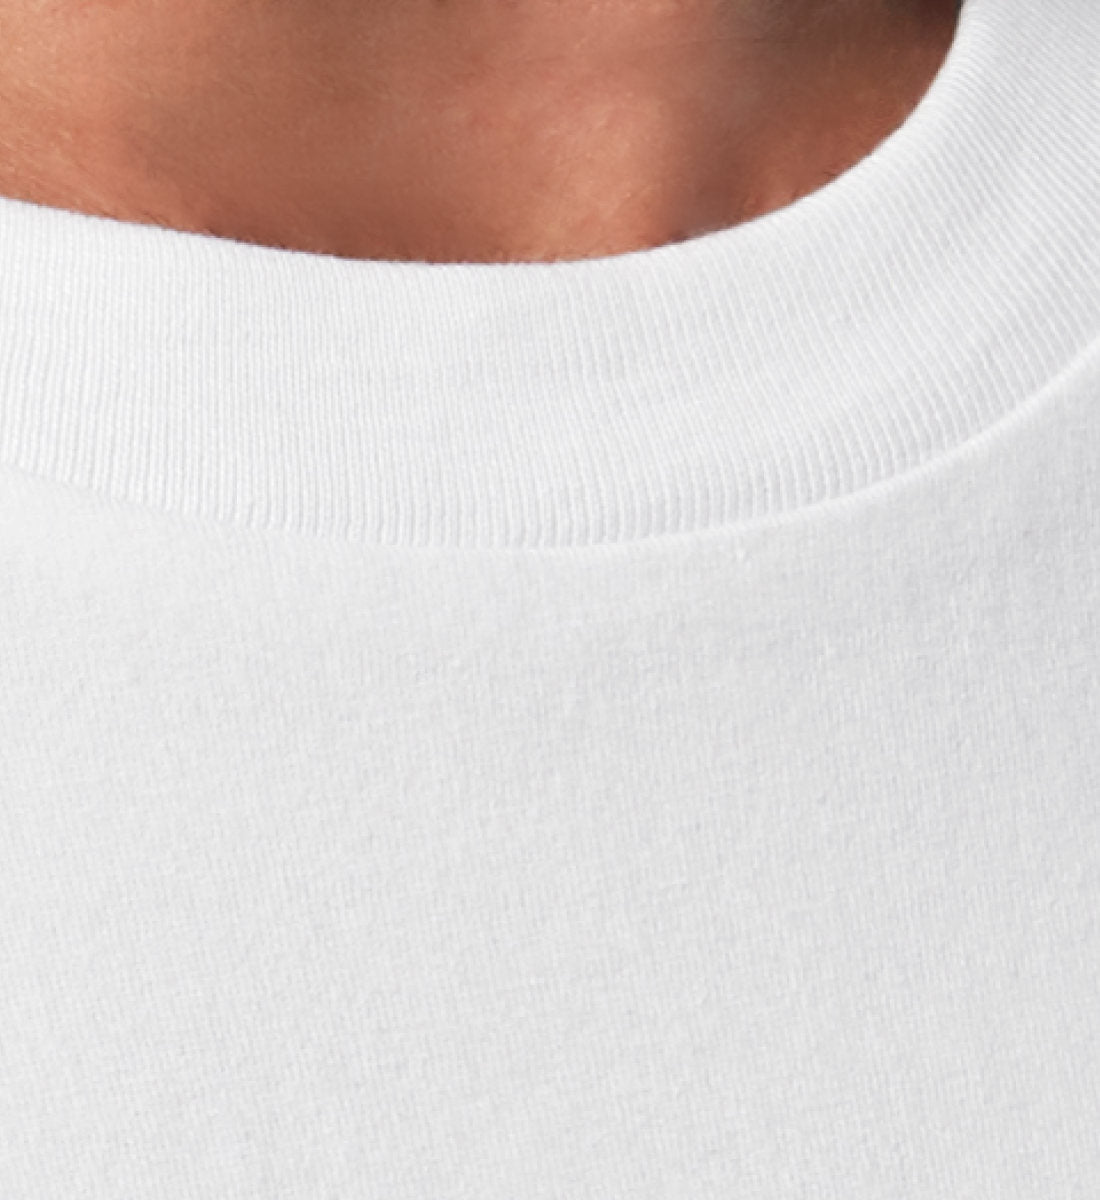 Weißes T-Shirt Unisex Relaxed Fit für Frauen und Männer bedruckt mit dem Design der Roger Rockawoo Clothing Kollektion what the hell are you waiting for